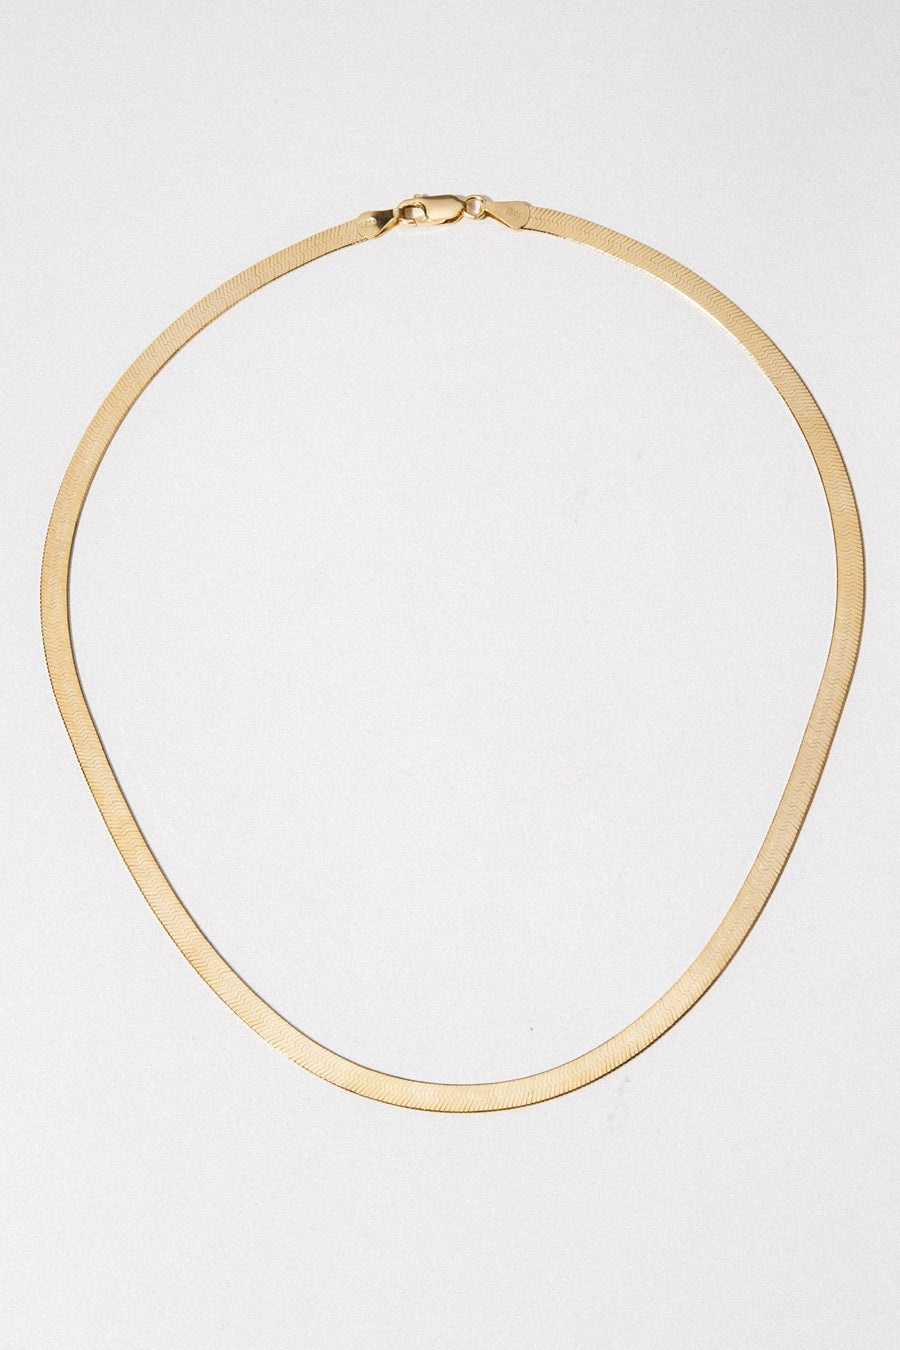 Tresor Jewelry Gold / 16 Inches Pathways Herringbone Necklace